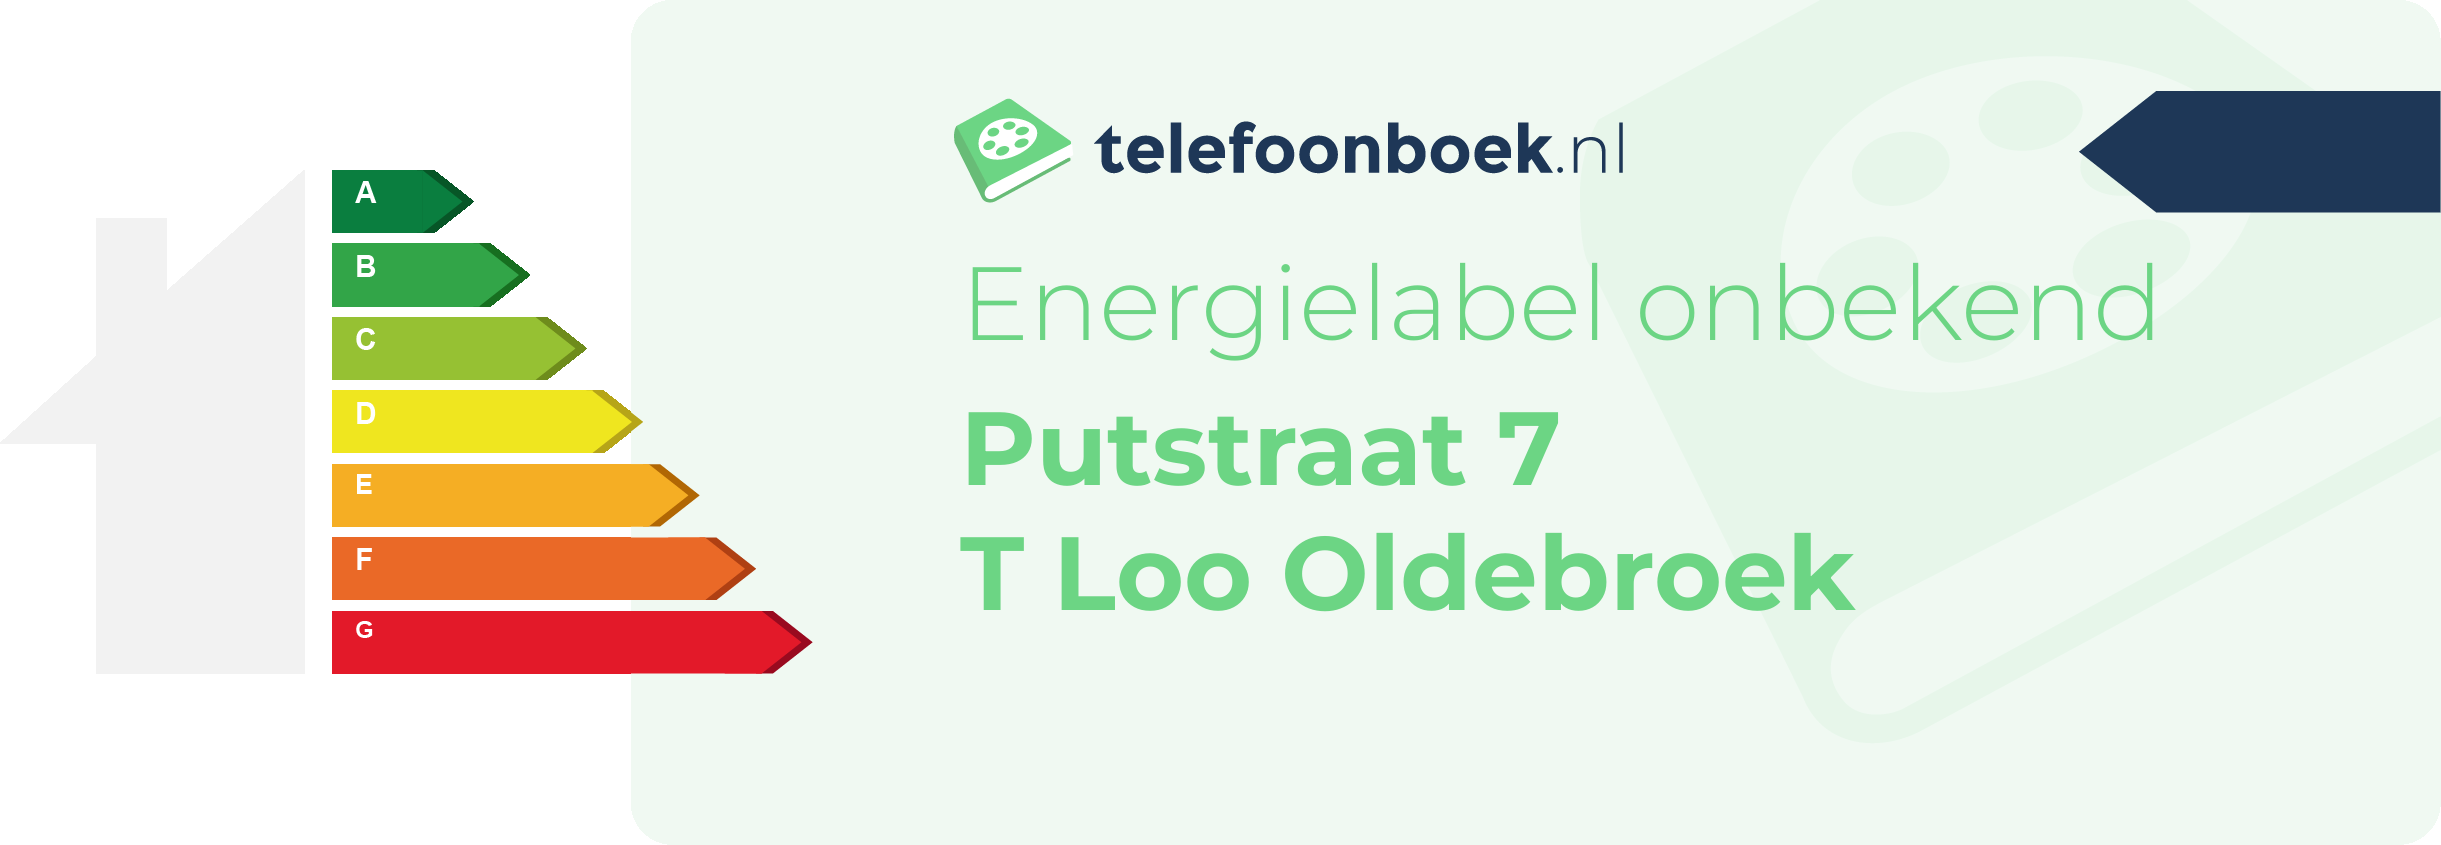 Energielabel Putstraat 7 T Loo Oldebroek